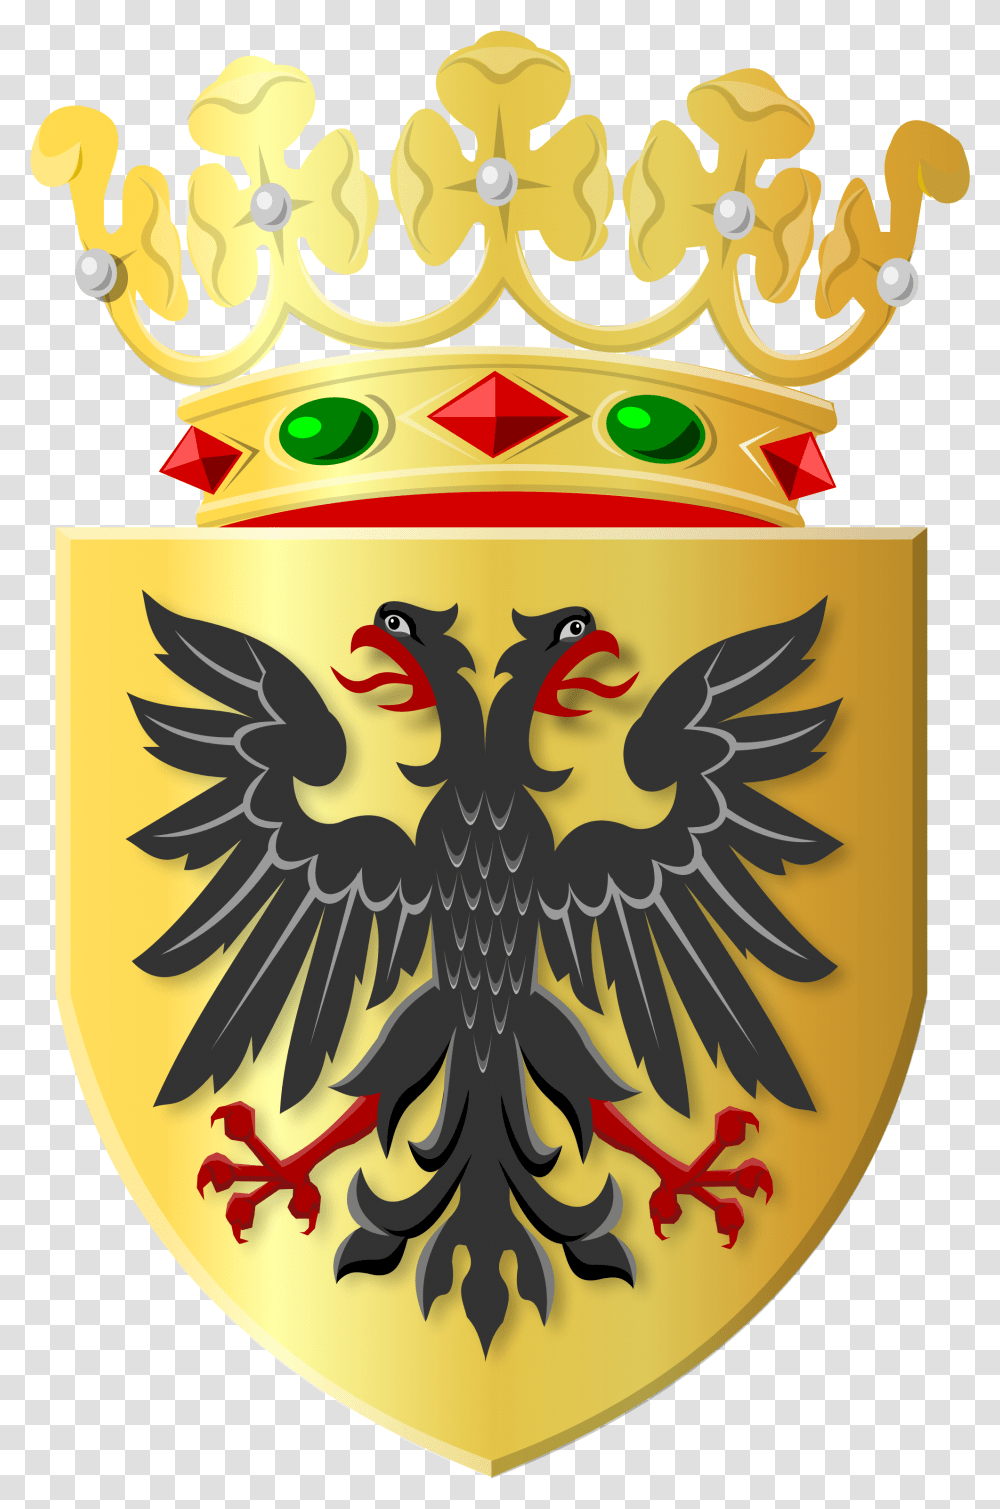 Golden Crown, Armor, Emblem, Logo Transparent Png